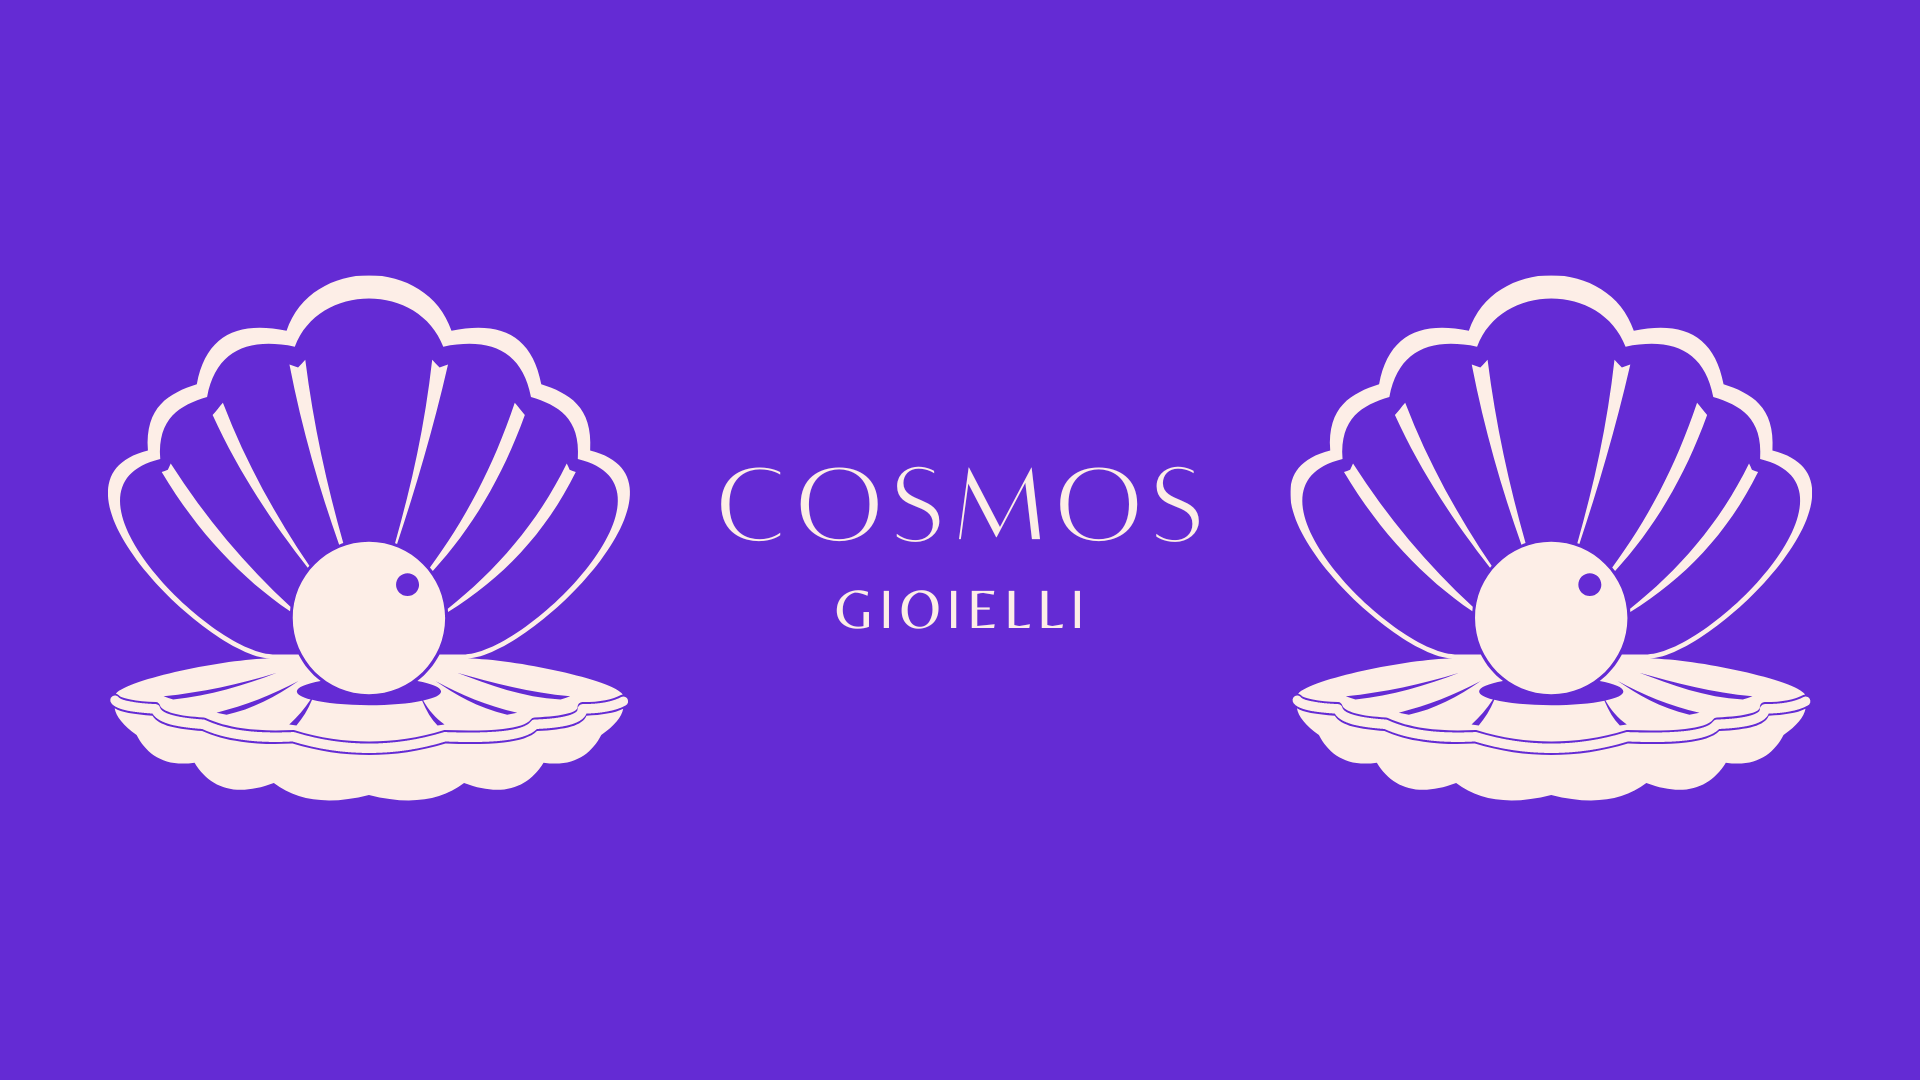 Cosmos Gioielli